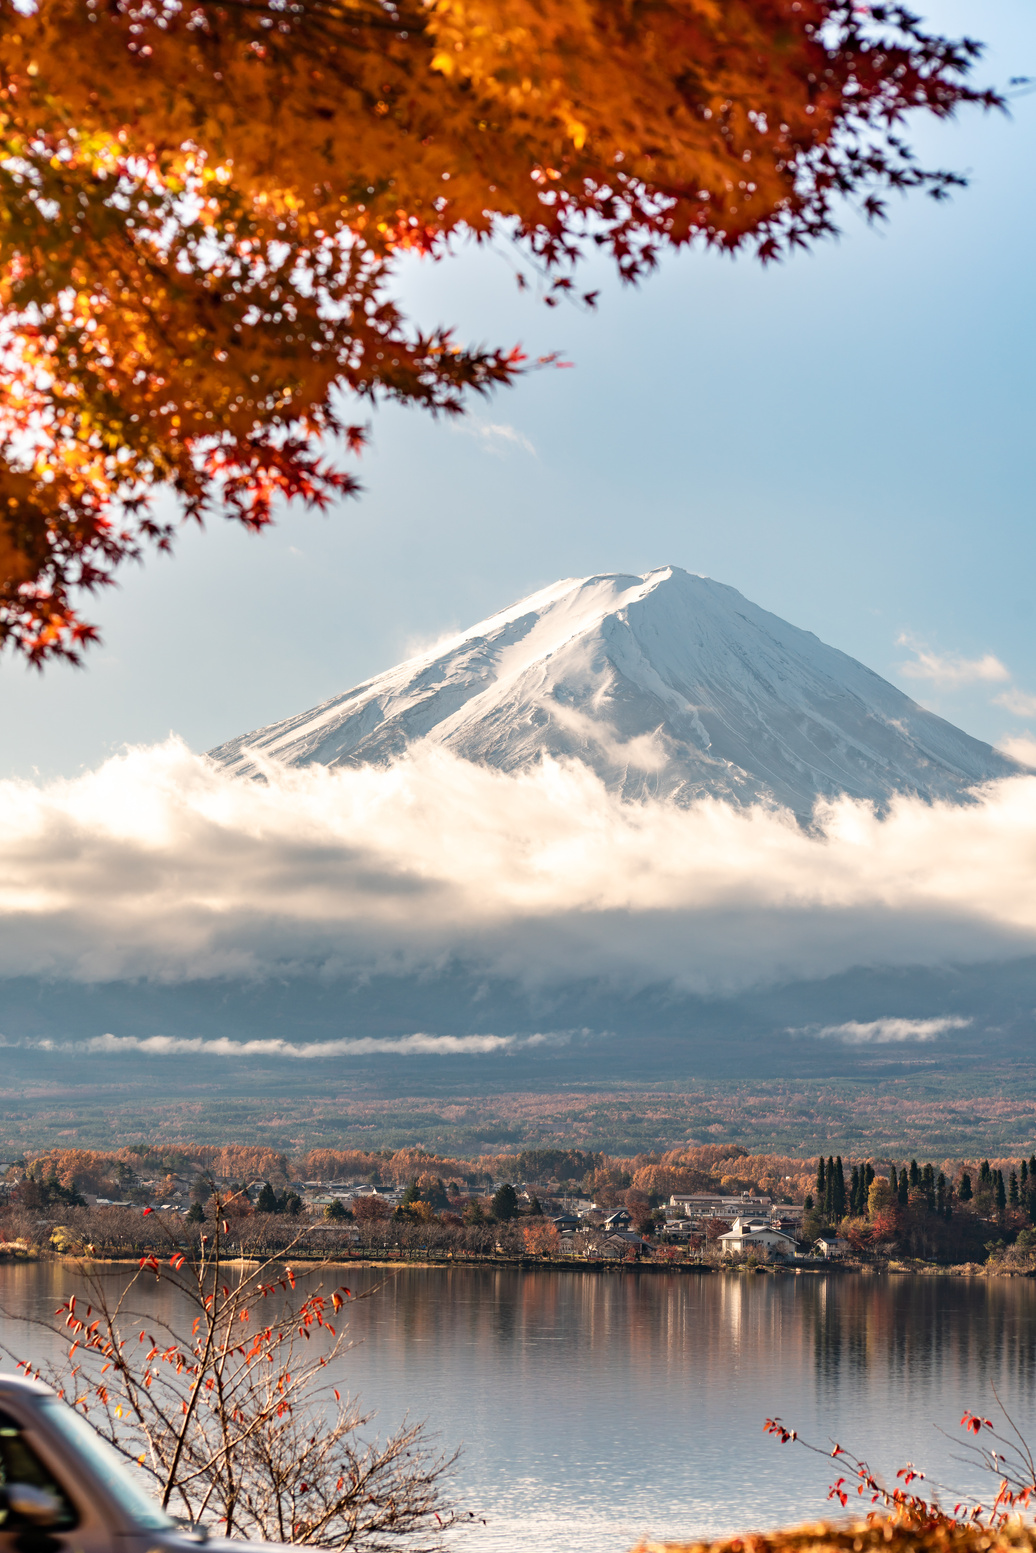 Lake by Mount Fuji 